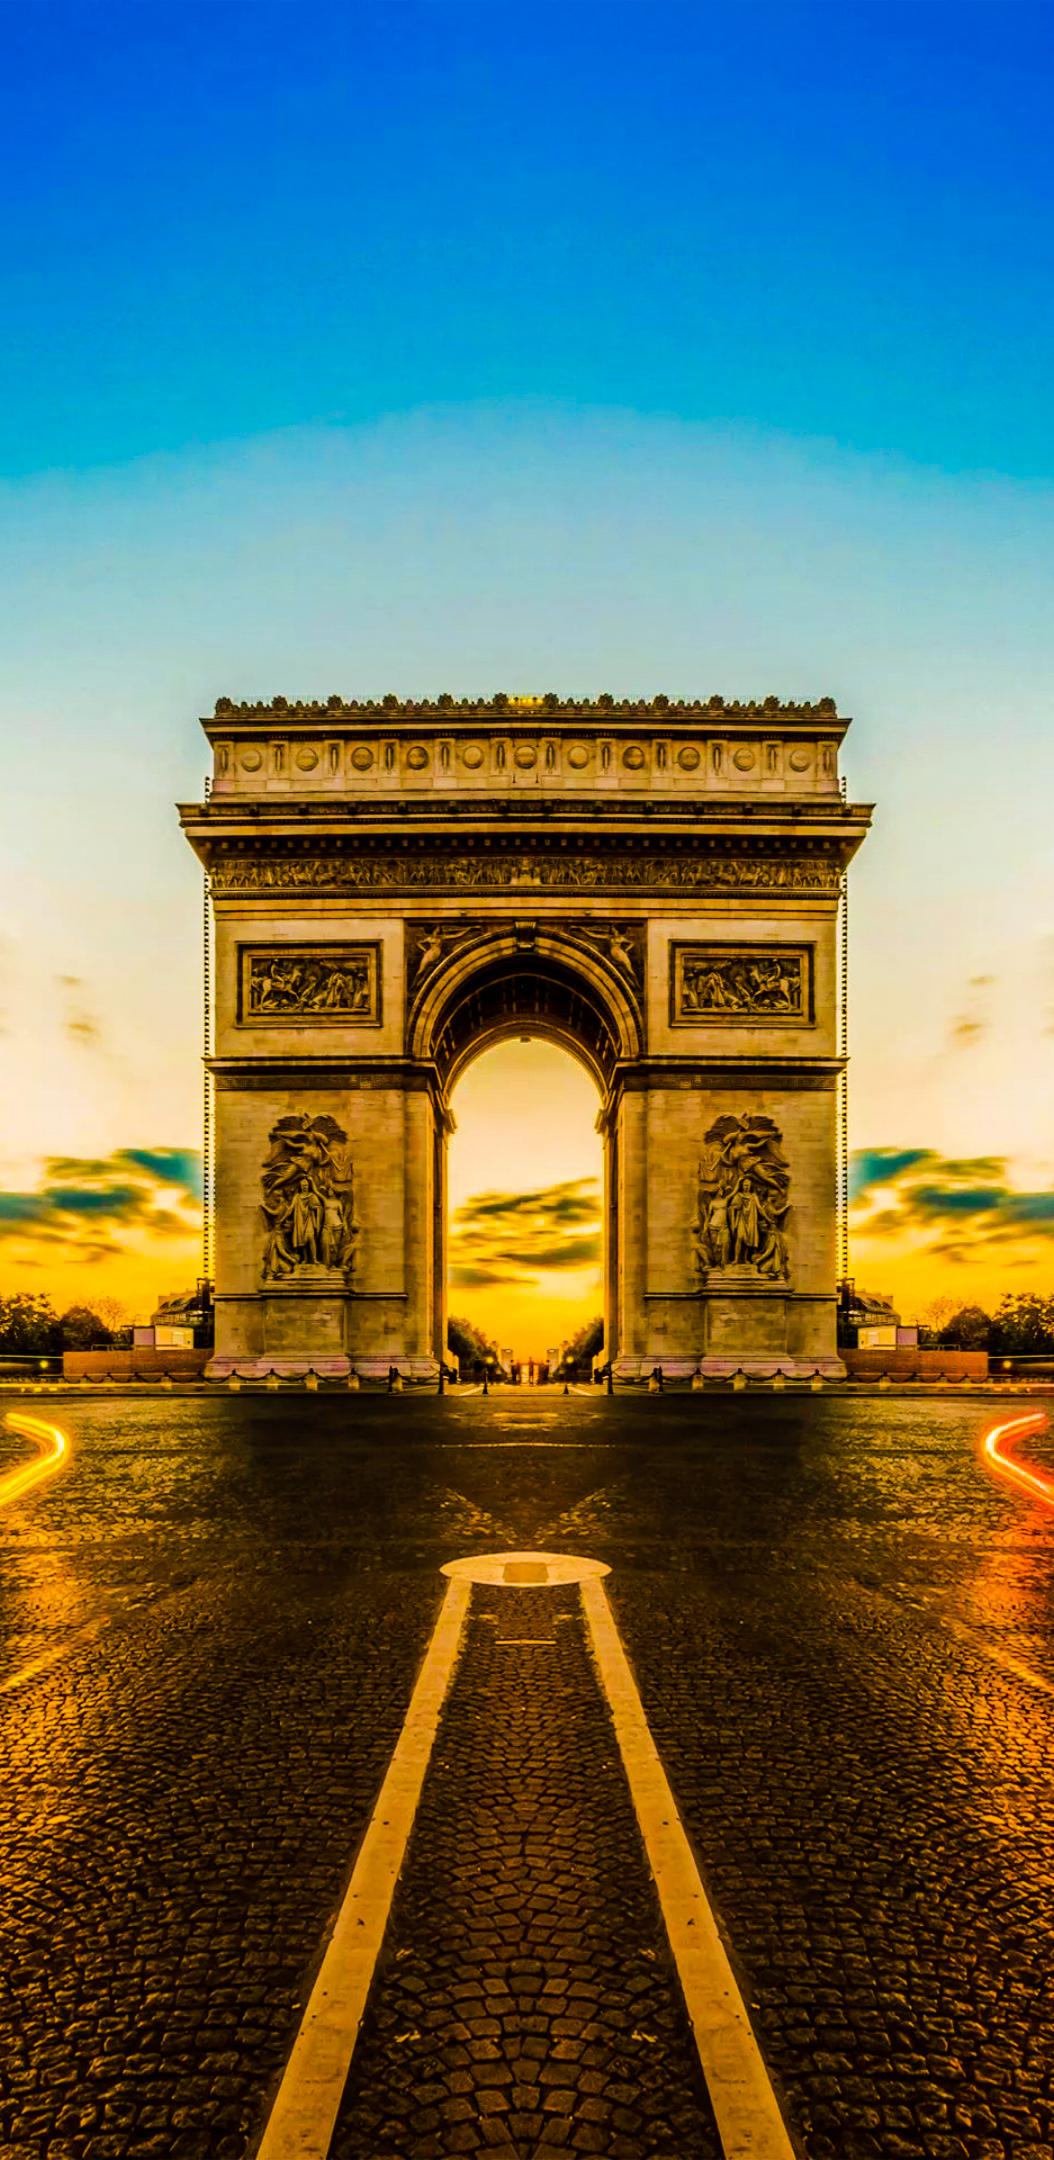 Great Electronics Cases: #Mobile #Wallpaper - #Arc de Triomphe, Paris